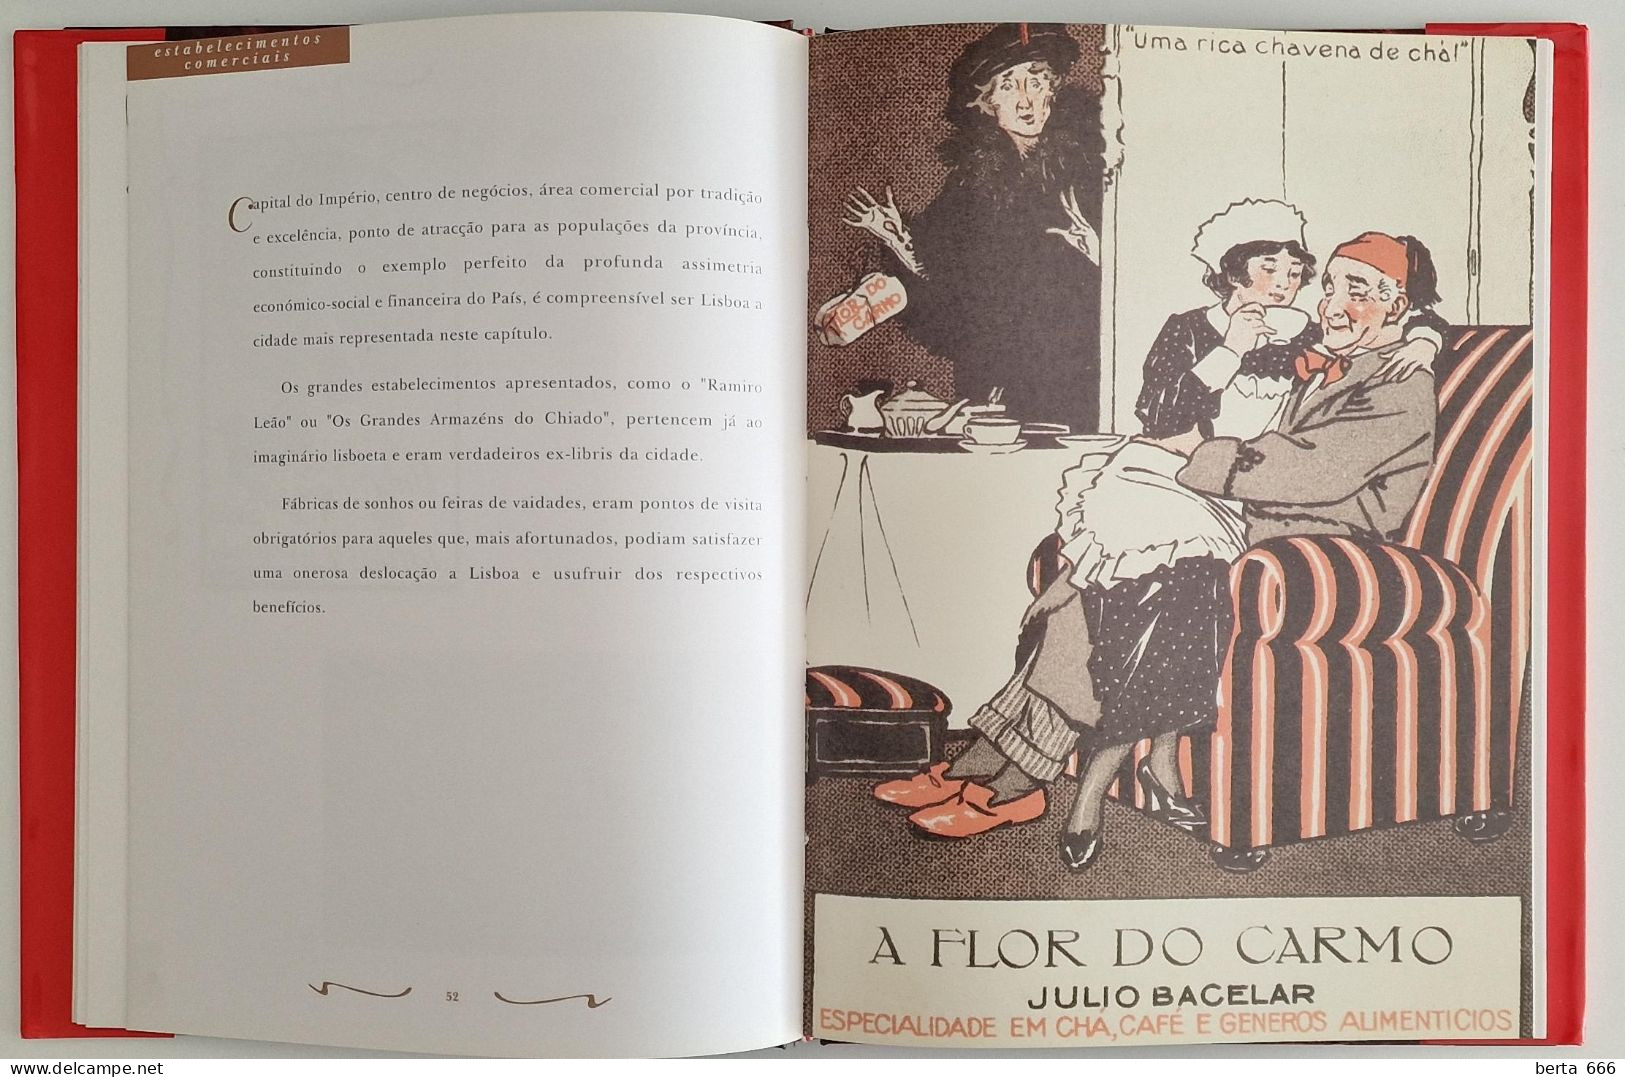 A Publicidade Em Portugal Através Do Bilhete Postal Ilustrado * Livro Capa Dura - Culture